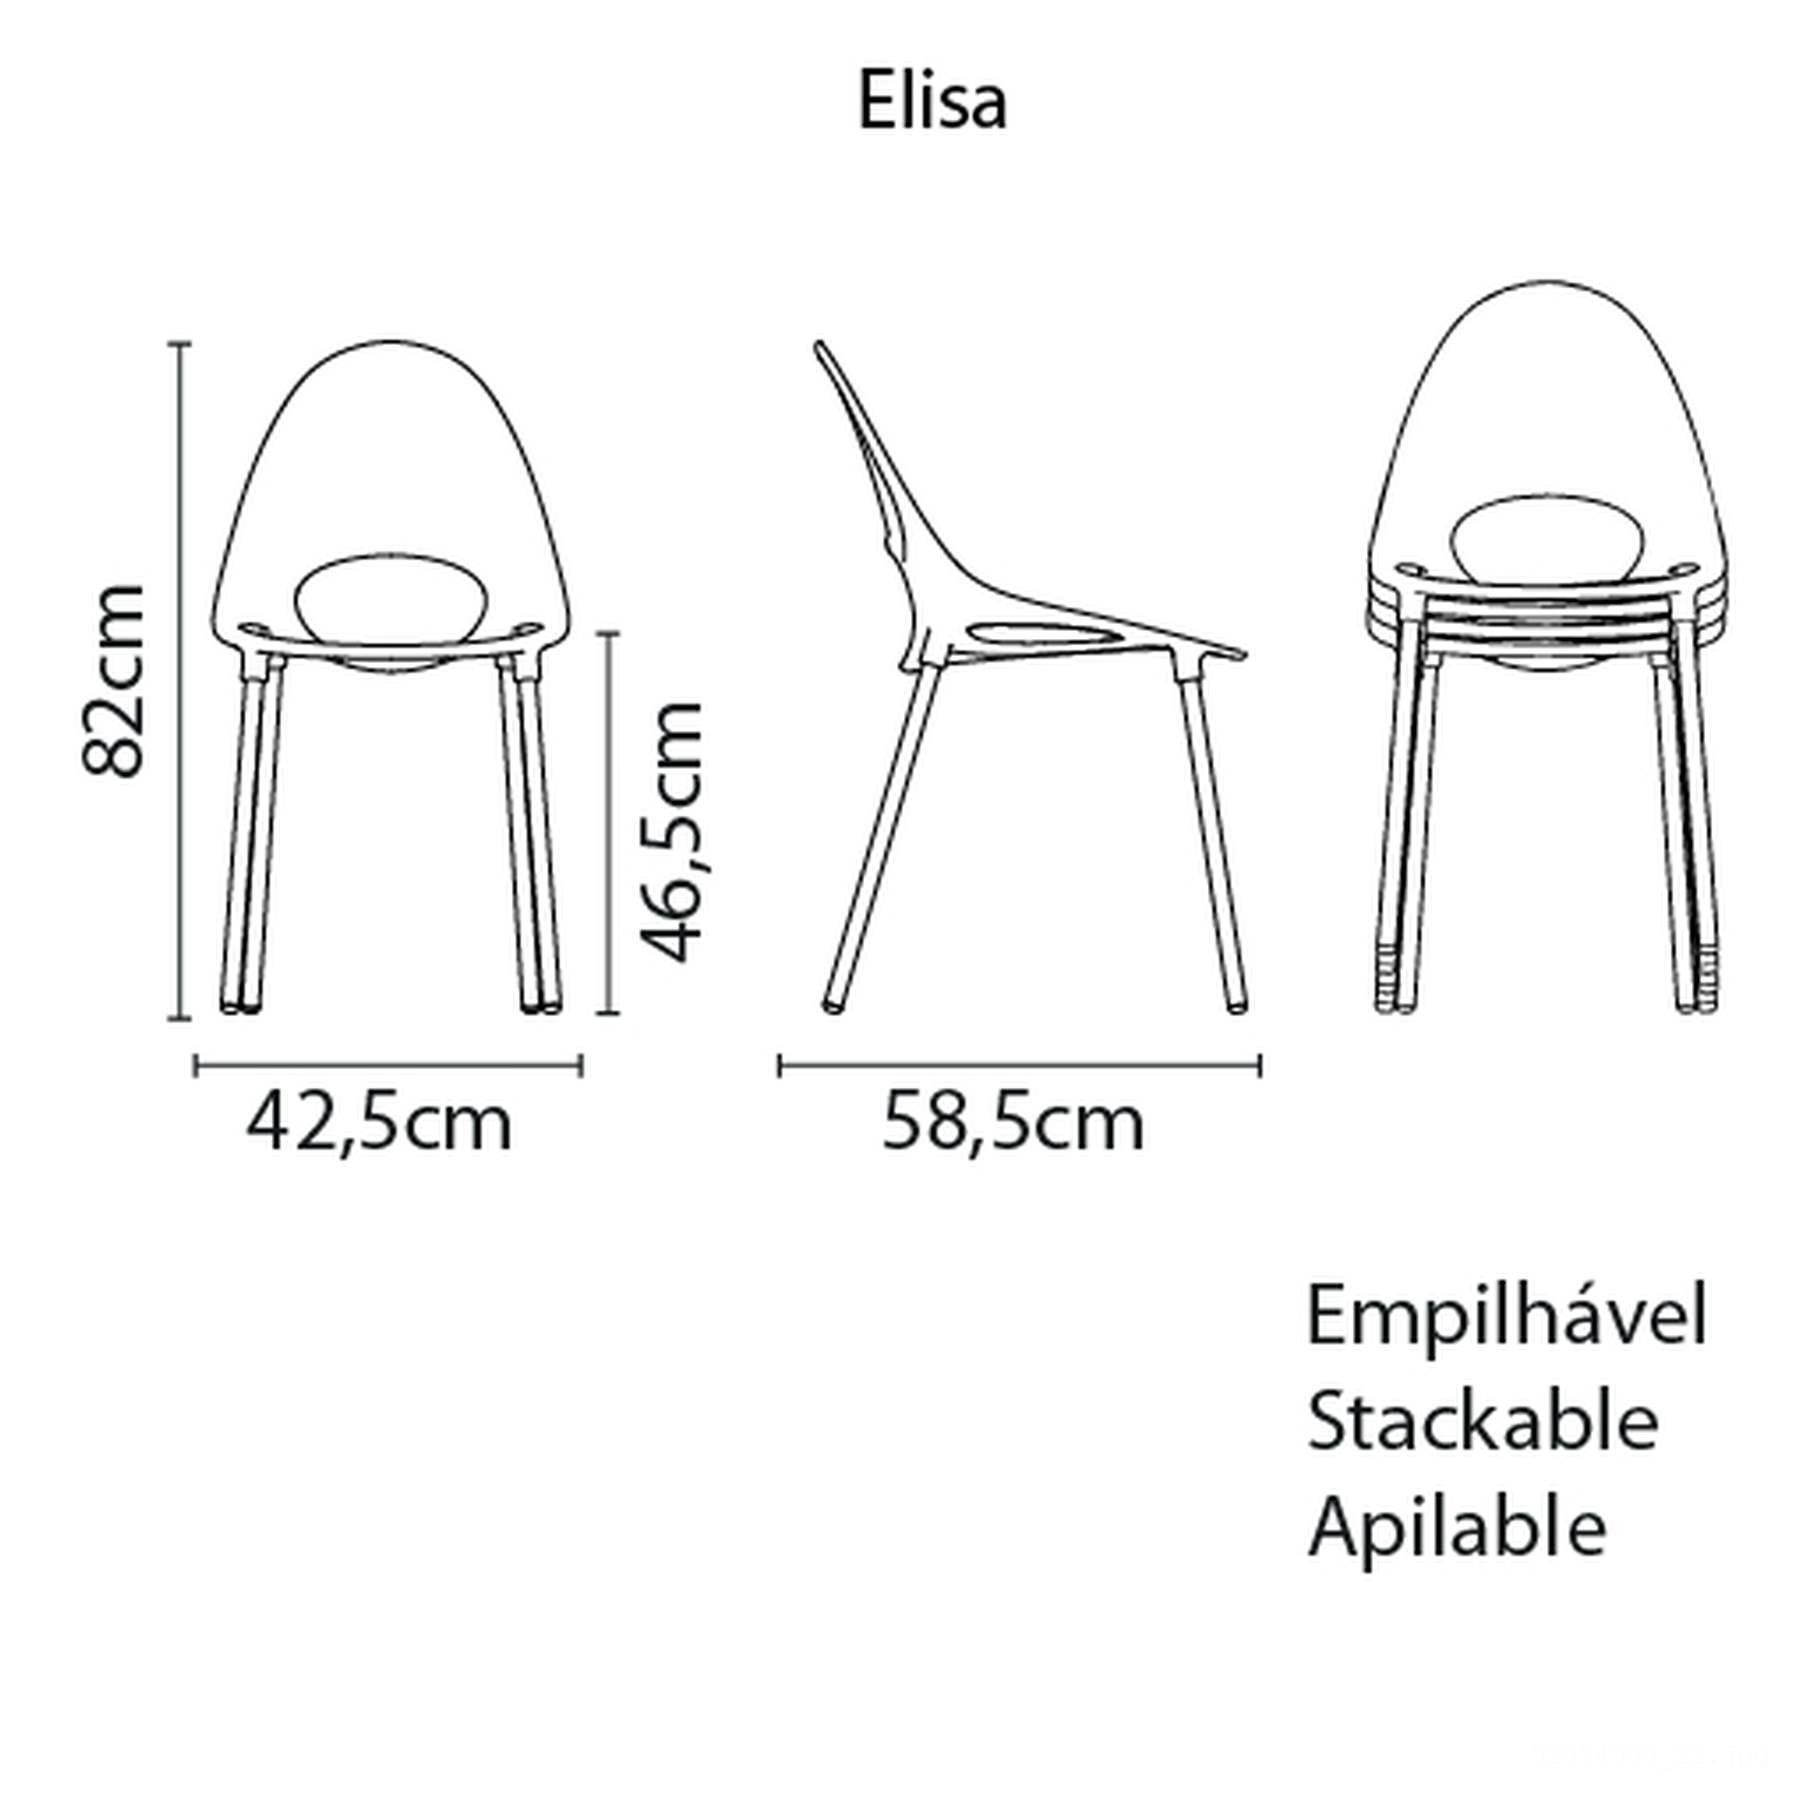 Cadeira Elisa Summa em Polipropileno Amarelo com Pernas de Alumínio Anodizado